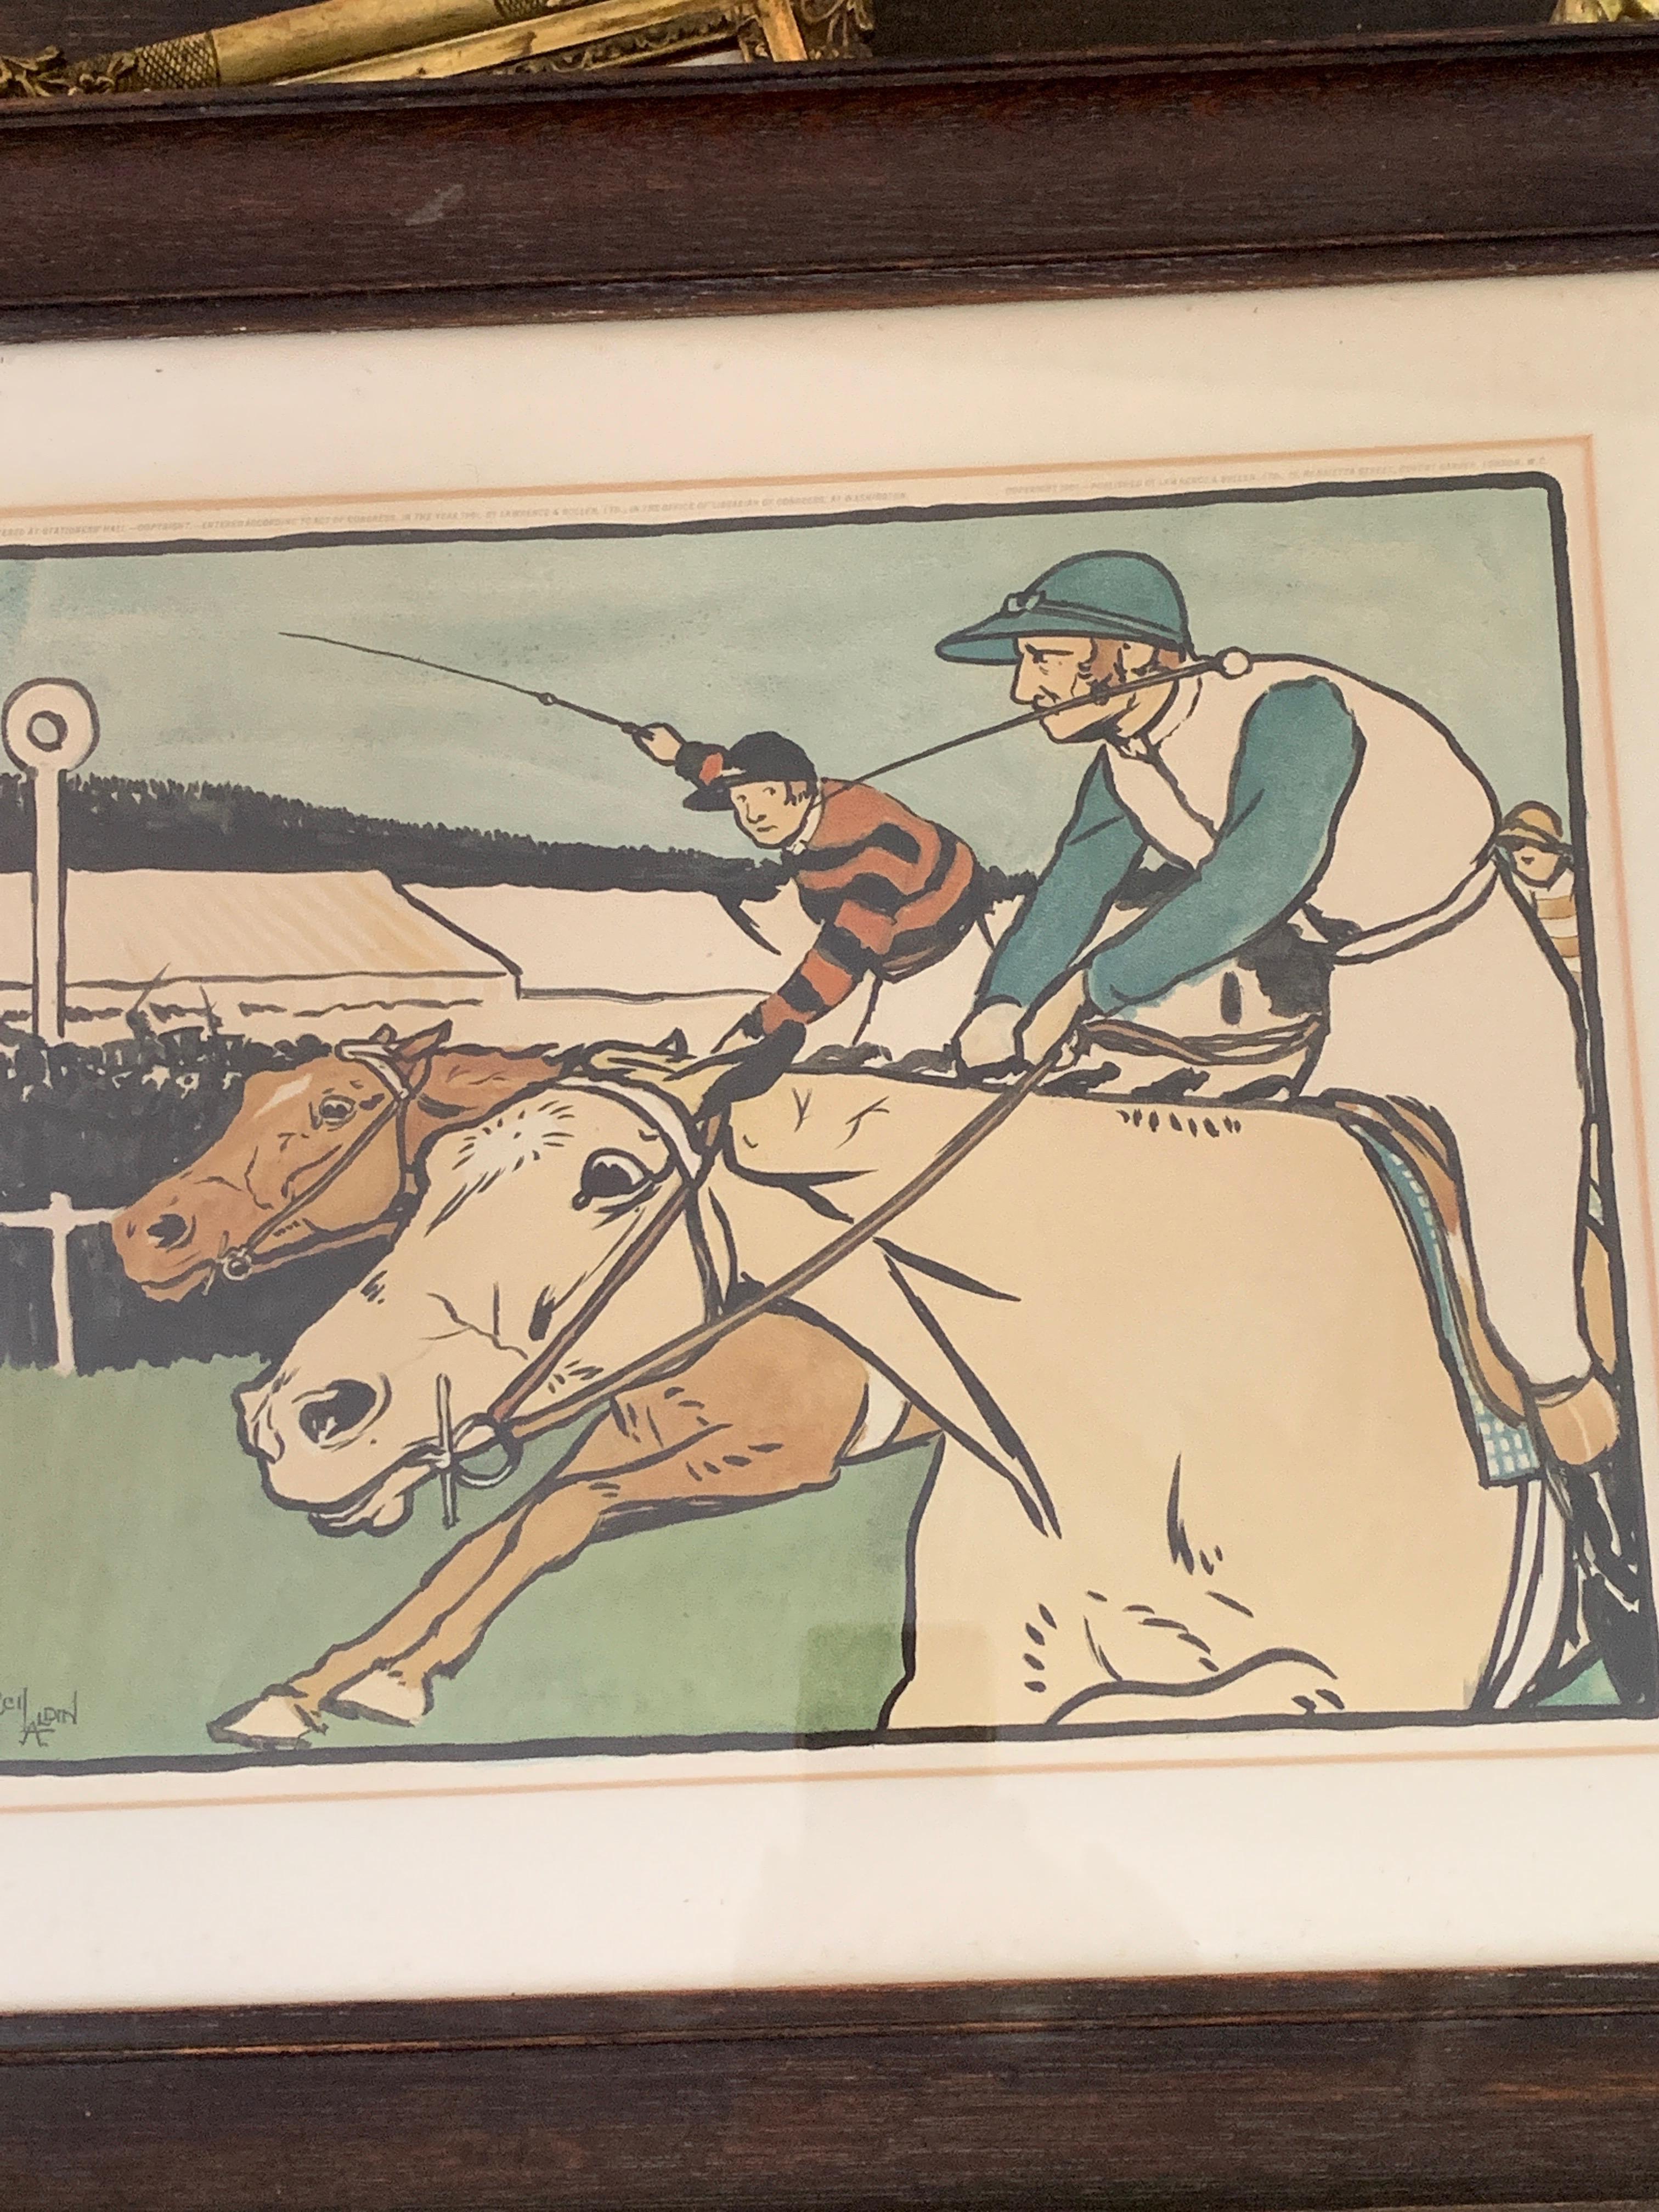 Englische viktorianische Pferderennenszene des 19. Jahrhunderts mit Jockeys – Print von Cecil Charles Windsor Aldin, R.B.A.